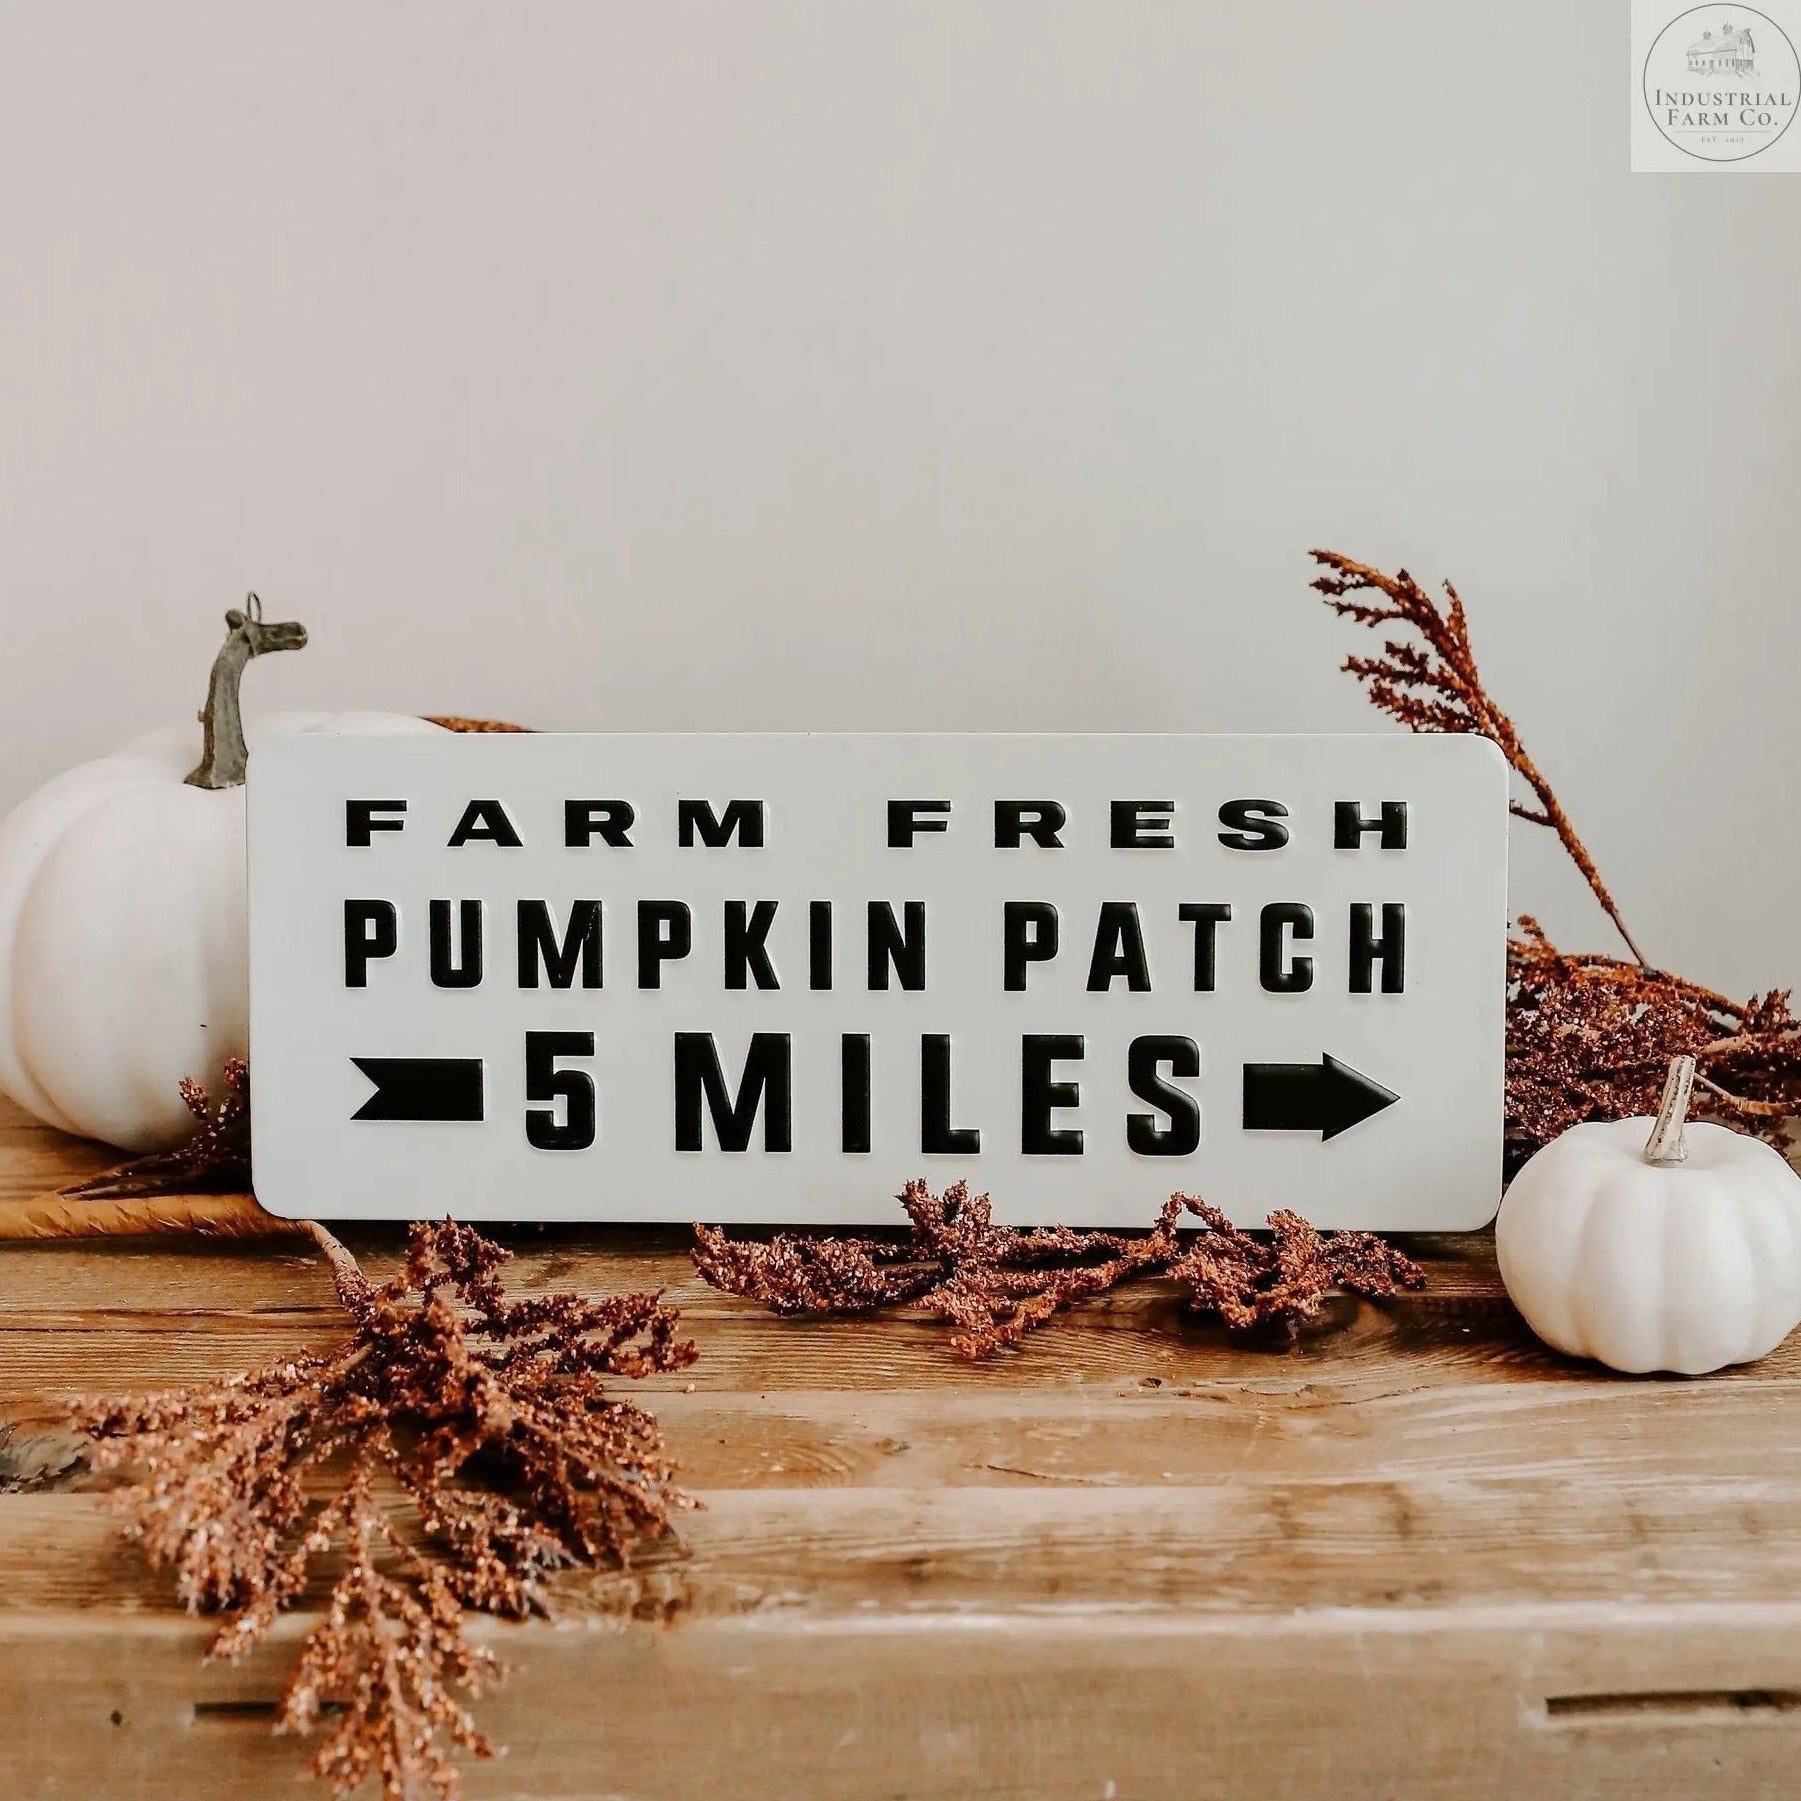 Pumpkin Patch Metal Sign  Default Title   | Industrial Farm Co